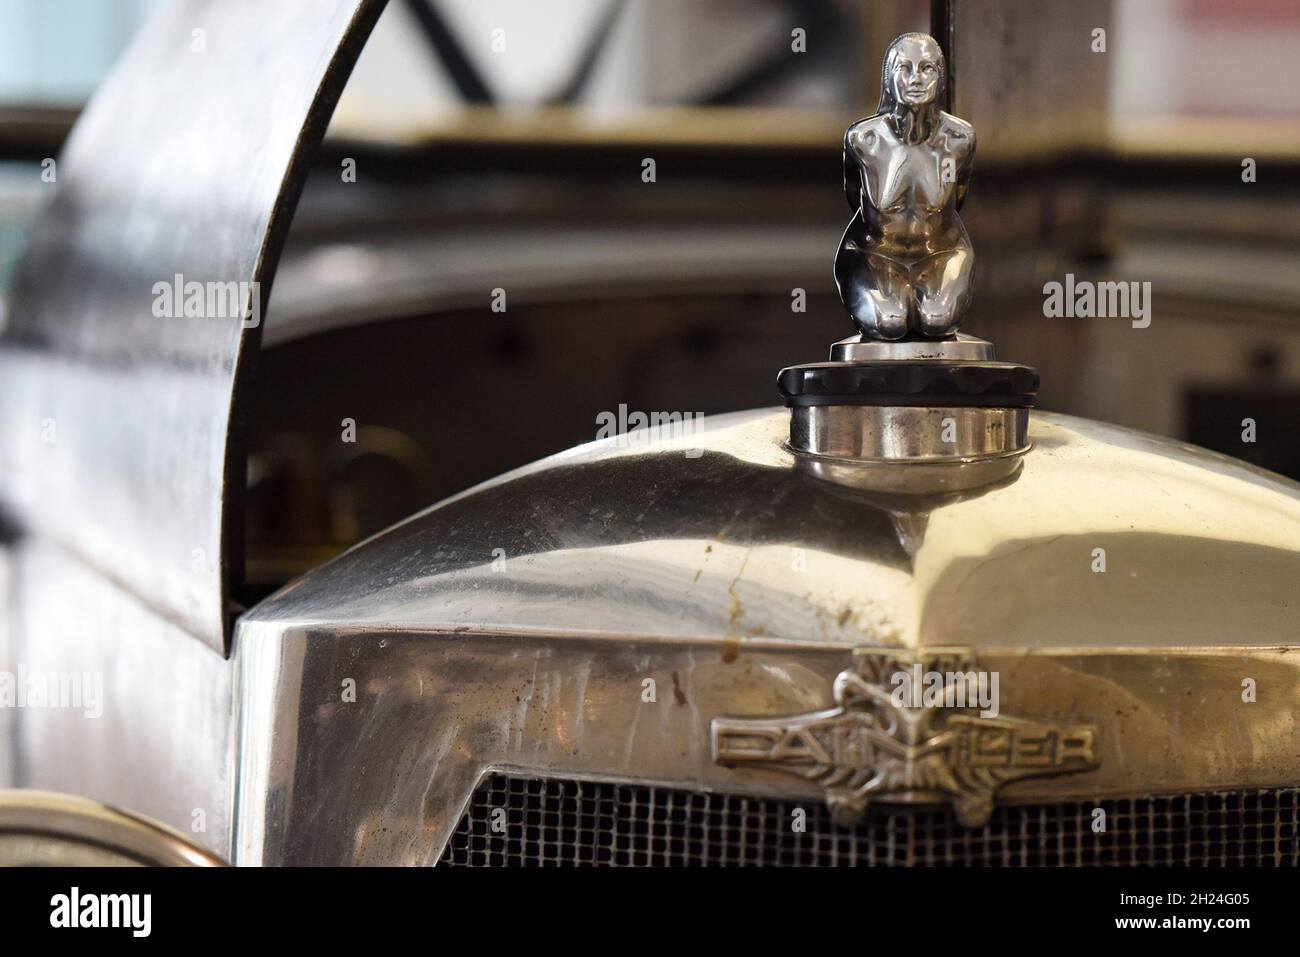 Die Kühlerfigiur eines historischen Austro-Daimler Fahrzeugs im Museum fahr(t)raum a Mattsee, Österreich, Europa - il radiatore figura di uno storico Foto Stock